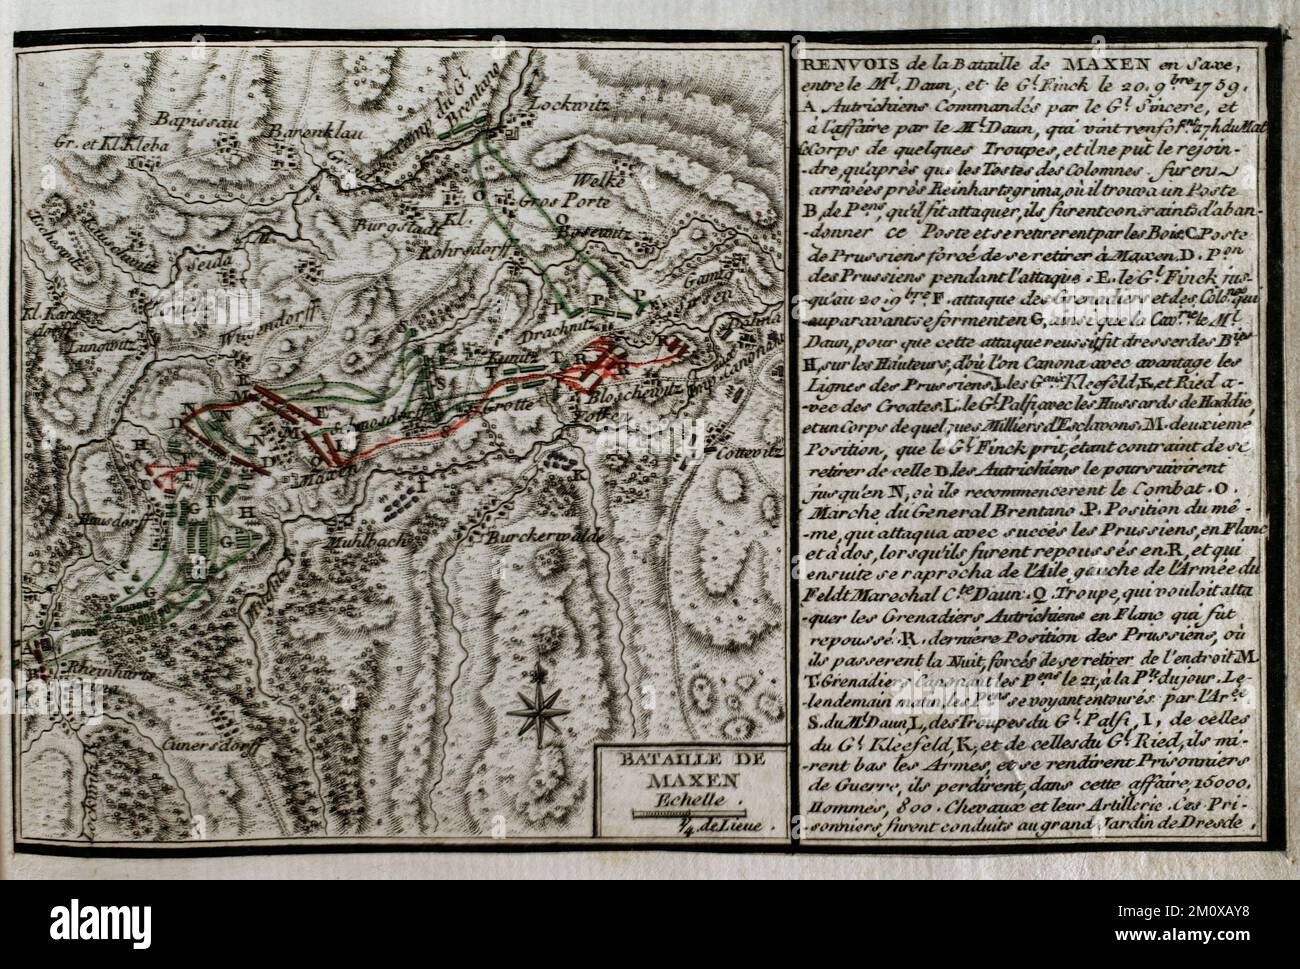 Guerre de sept ans (1756-1763). Troisième guerre de Silésie. Bataille de Maxen (20 novembre et 21, 1759). Saxe. Les troupes prussiennes du général Friedrich August von Fink ont été déplacées pour attaquer les lignes de communication entre l'armée autrichienne du maréchal Daun à Dresde et en Bohême. Le 20 novembre 1759, Daun réussit à vaincre les Prussiens de Finck. Le lendemain, Finck se rendit. Publié en 1765 par le cartographe Jean de Beaurain (1696-1771) comme illustration de sa Grande carte de l'Allemagne, avec les événements qui ont eu lieu pendant la guerre de sept ans. Gravure et gravure. Édition française, 1765. Hist. Militaire Banque D'Images